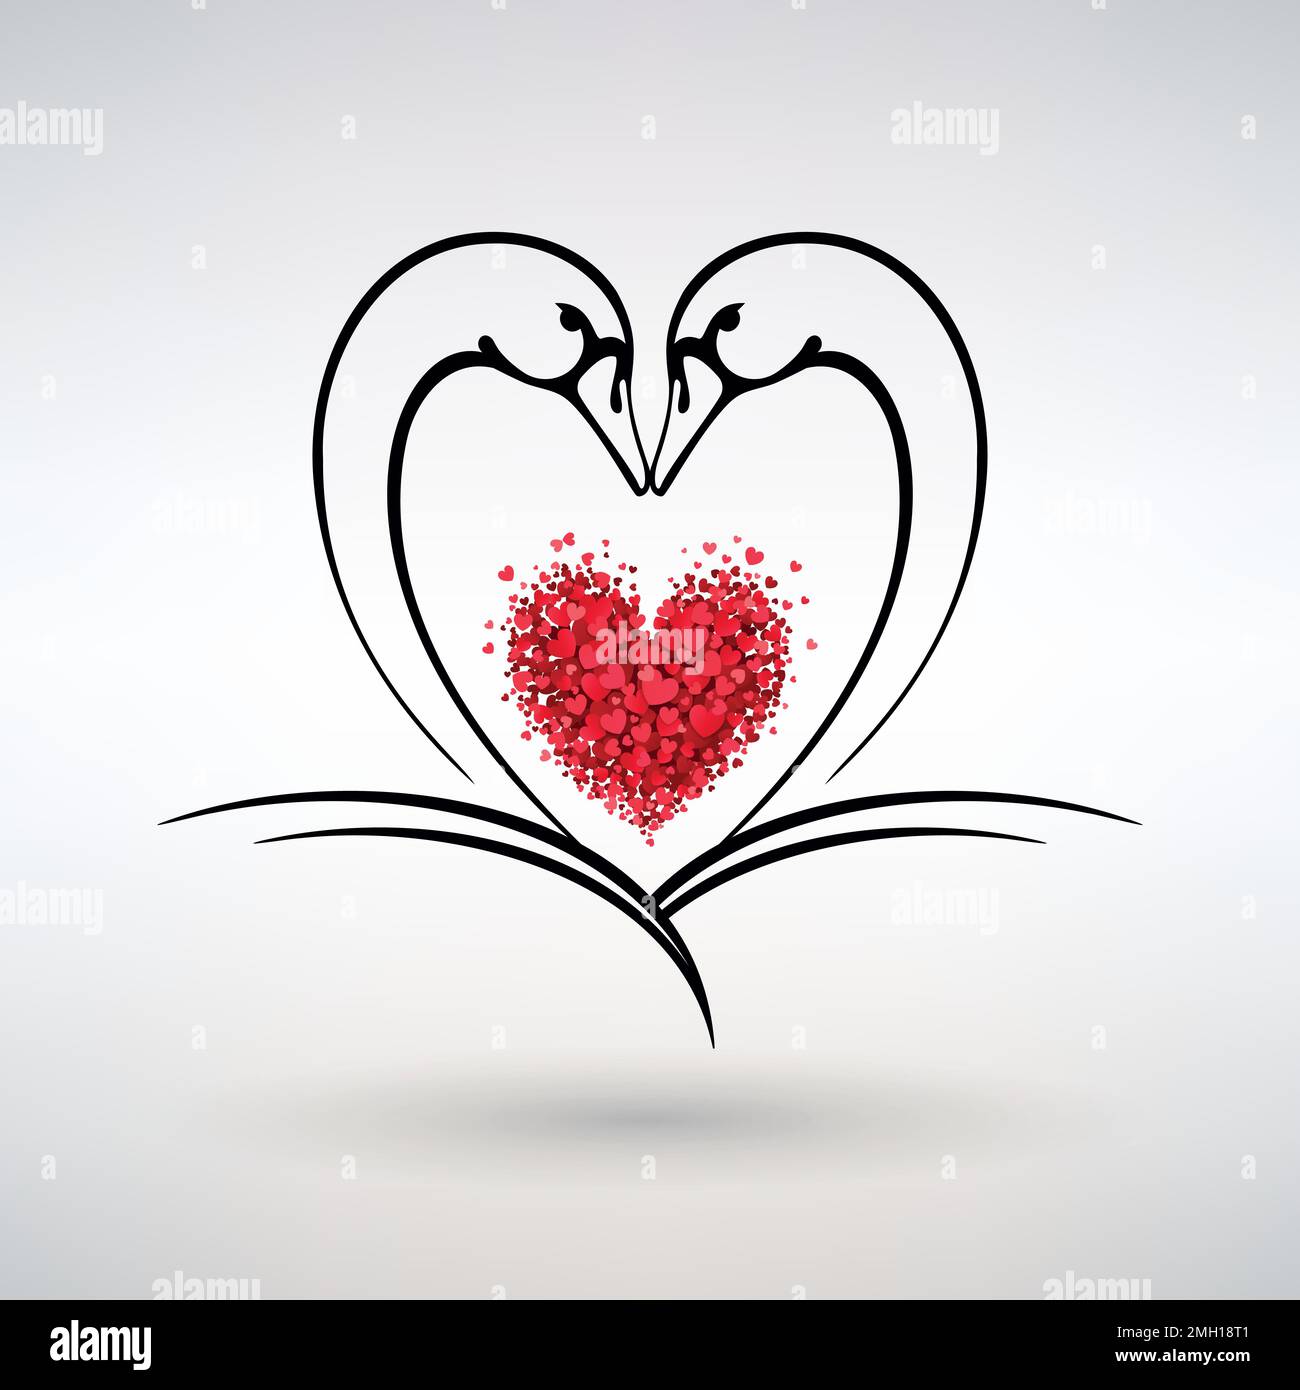 cigni con cuori rossi simbolo di amore e passione su sfondo chiaro Illustrazione Vettoriale